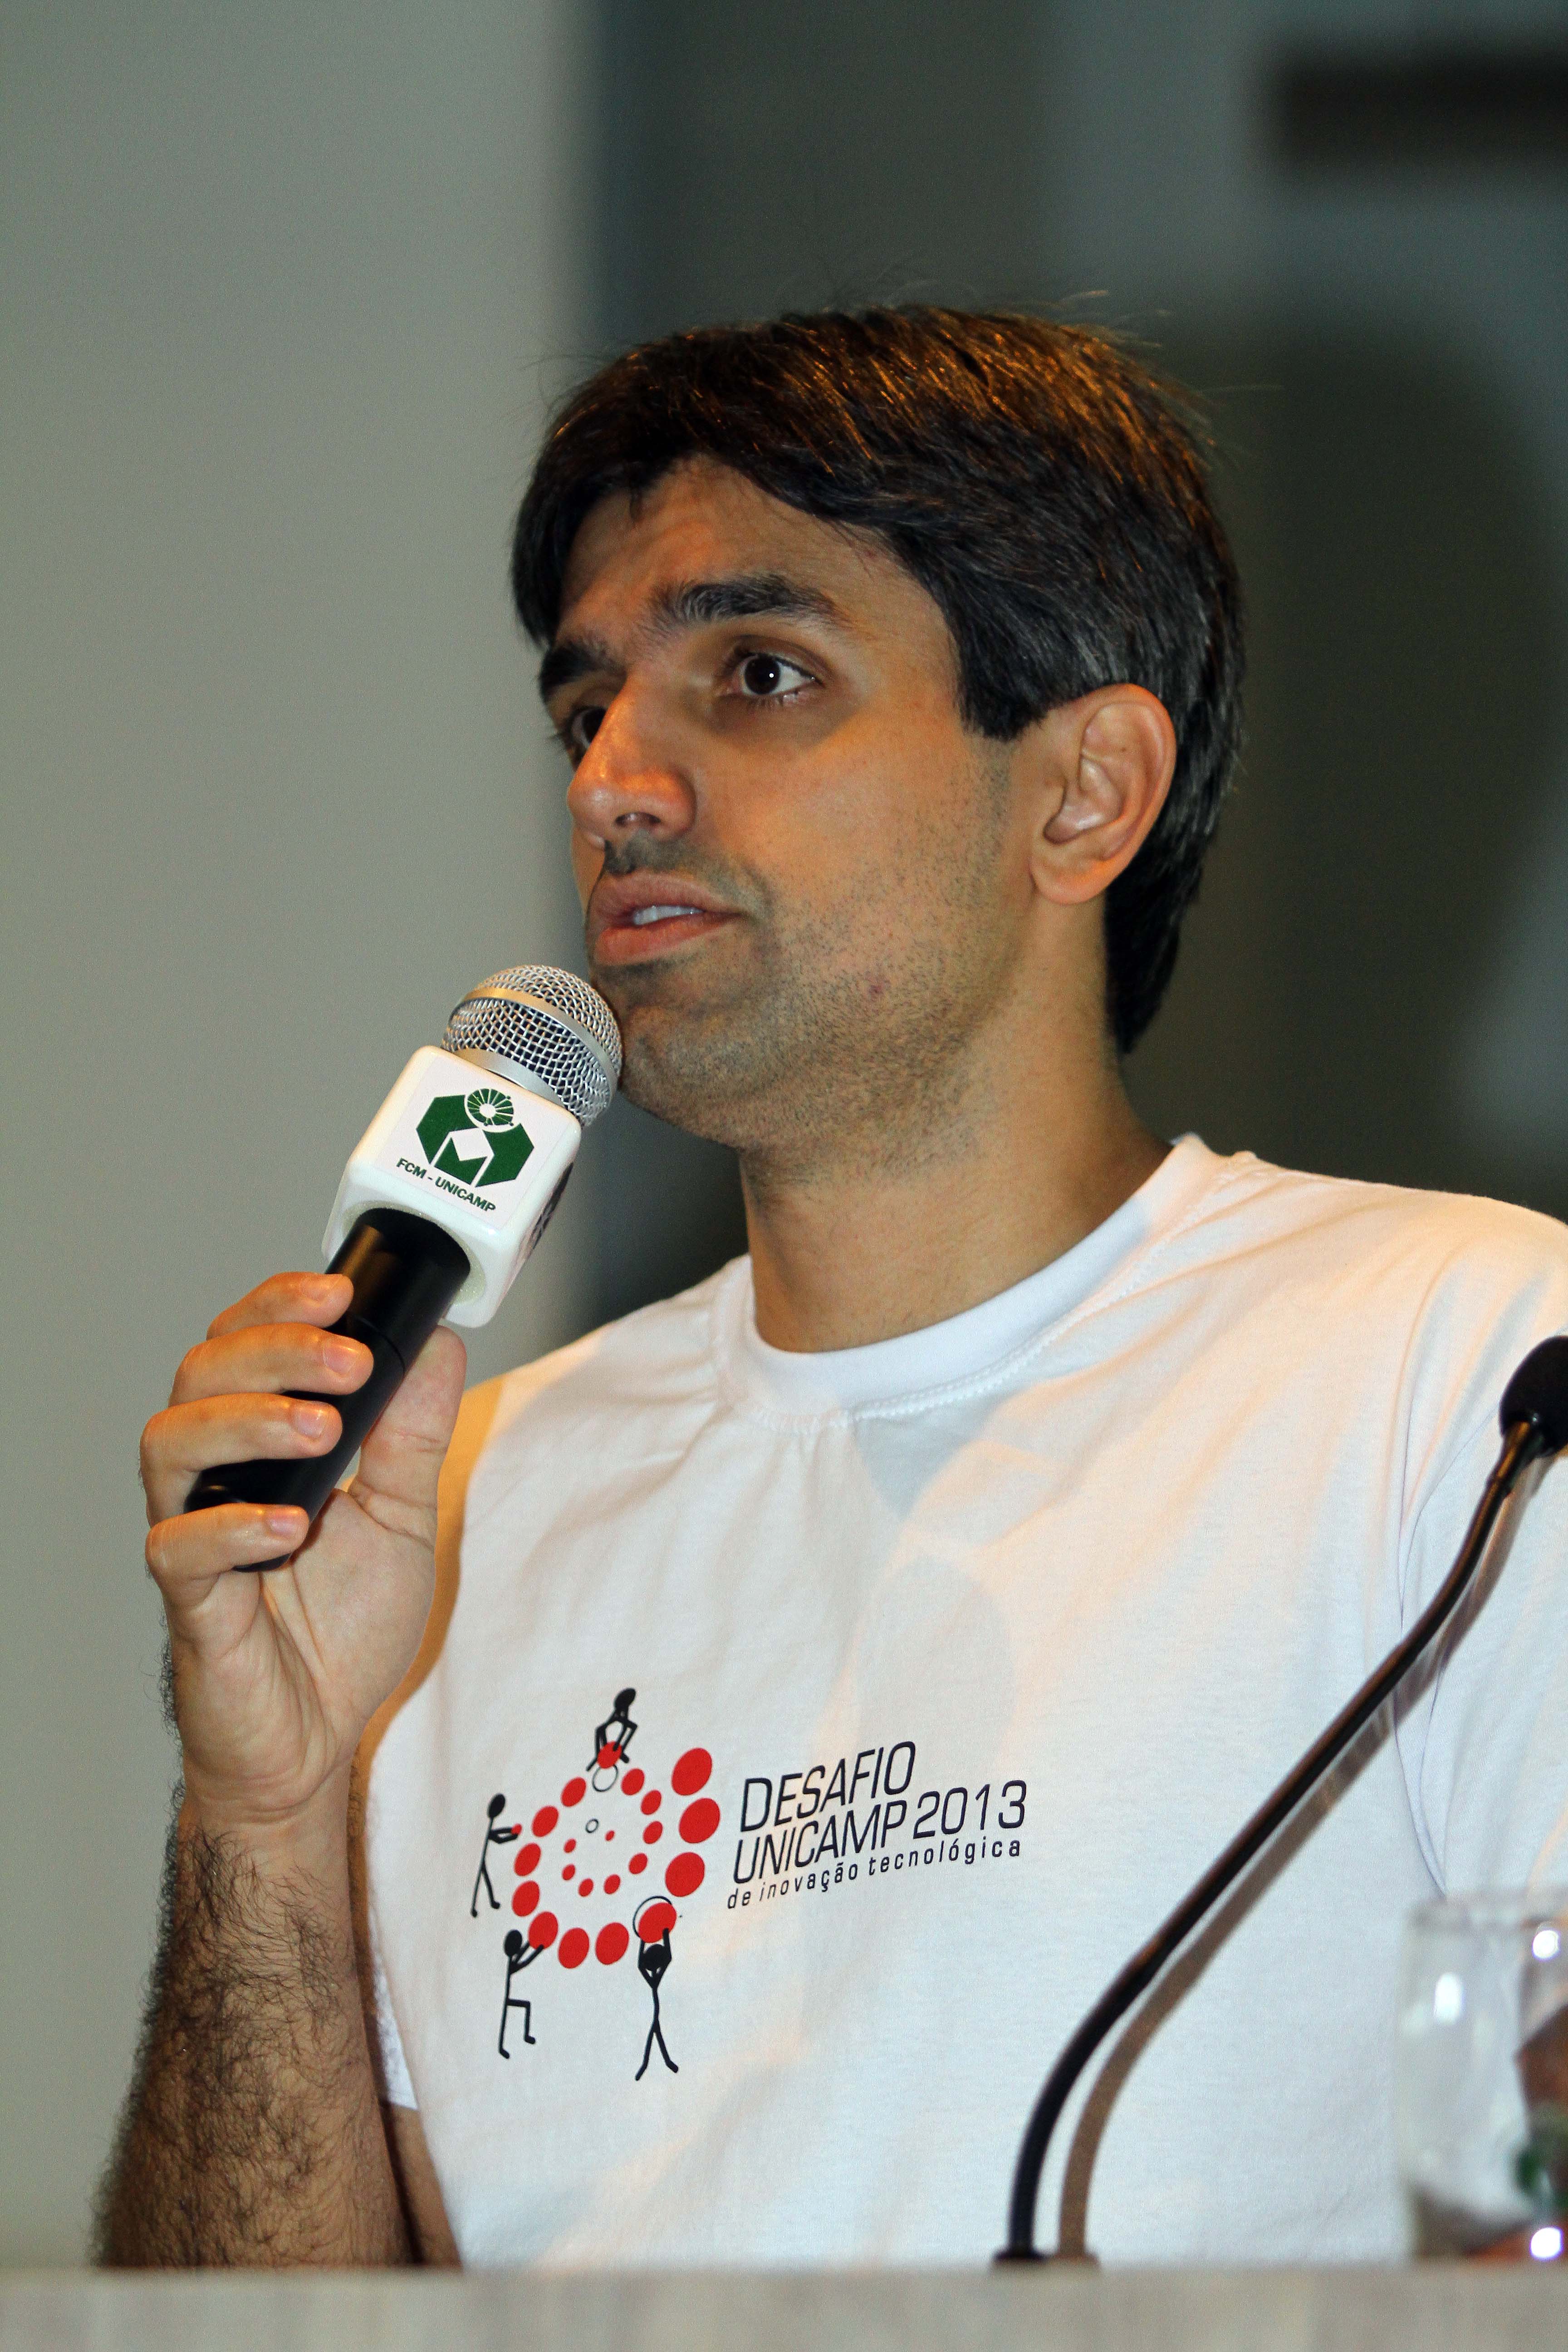 Virgilio Marques dos Santos, coordenador técnico no Desafio Unicamp, ensina a metodologia da competição